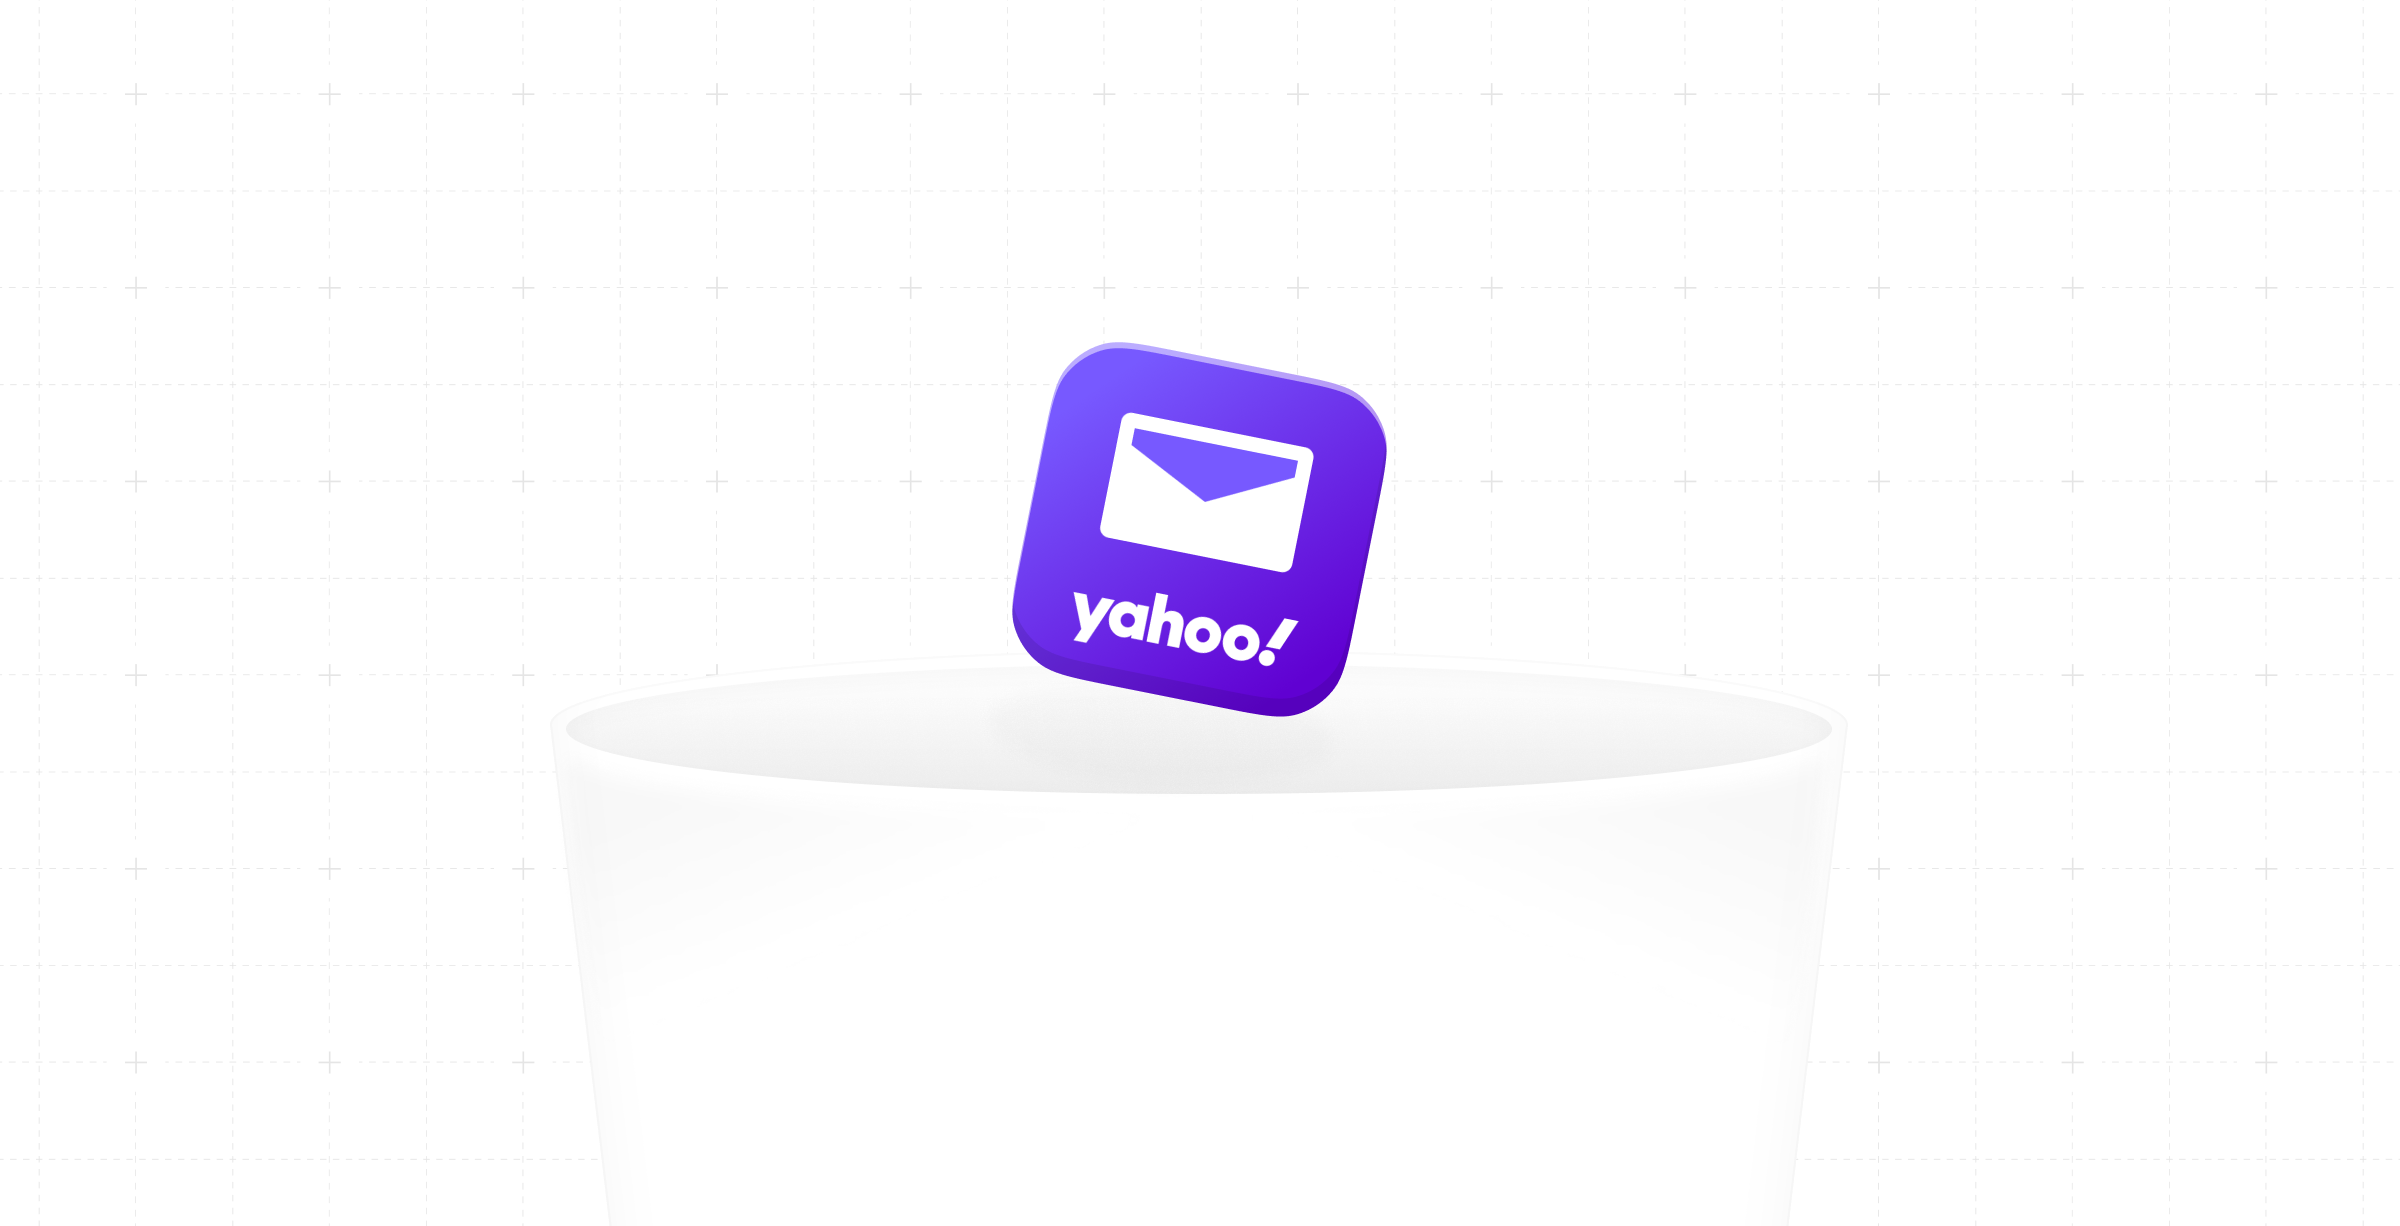 Yahoo Email Entrar — Saiba Tudo. Yahoo mail entrar é uma das mais